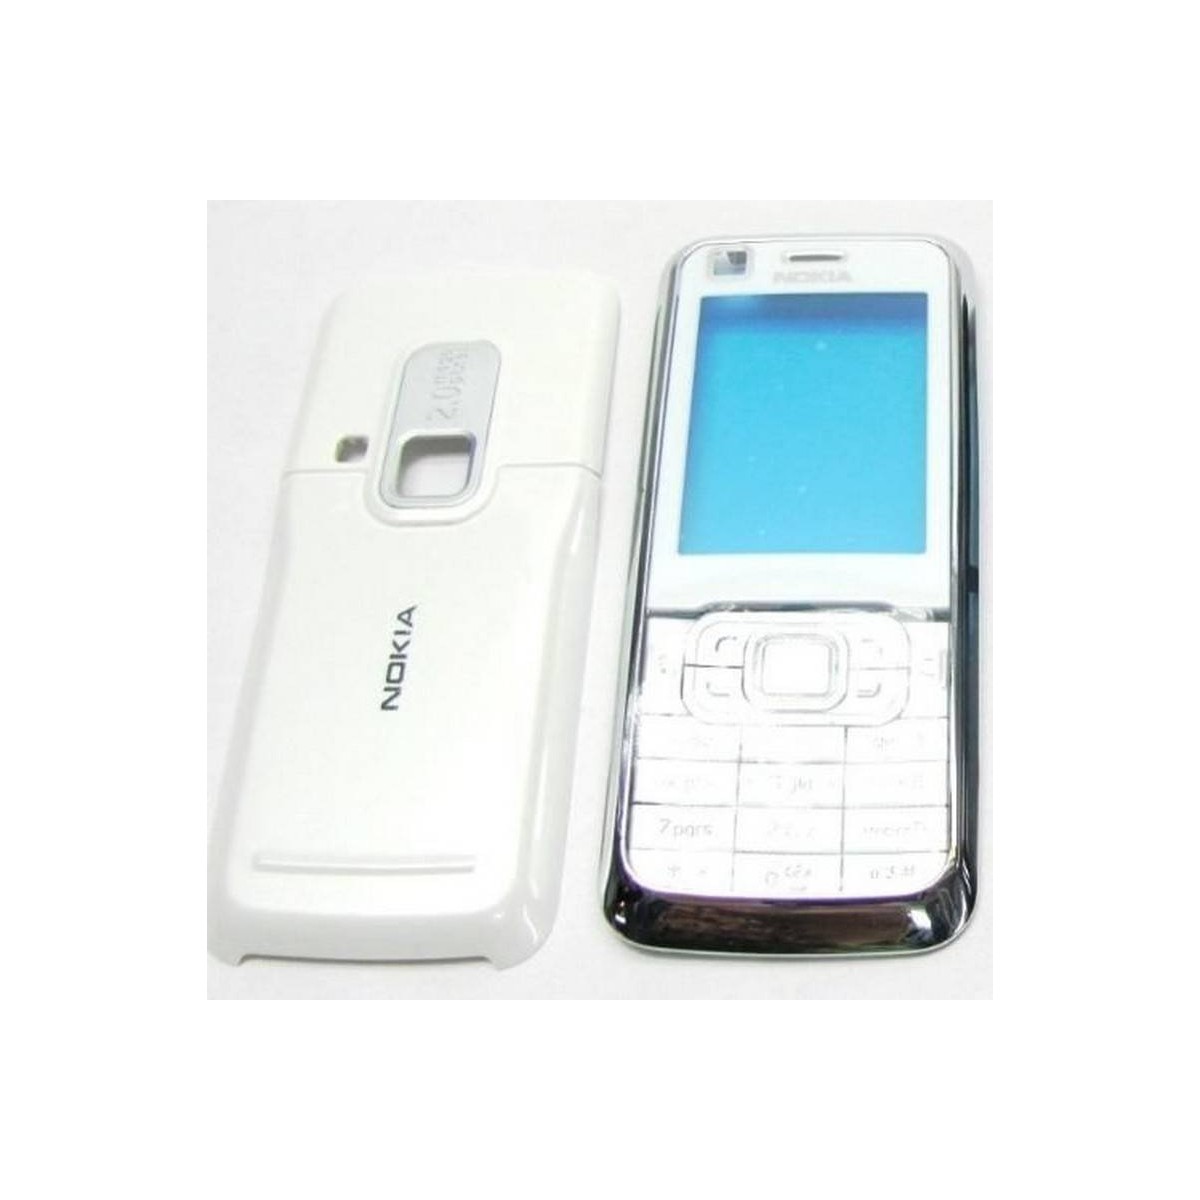 Carcasa Nokia 6120 Completa Blanca